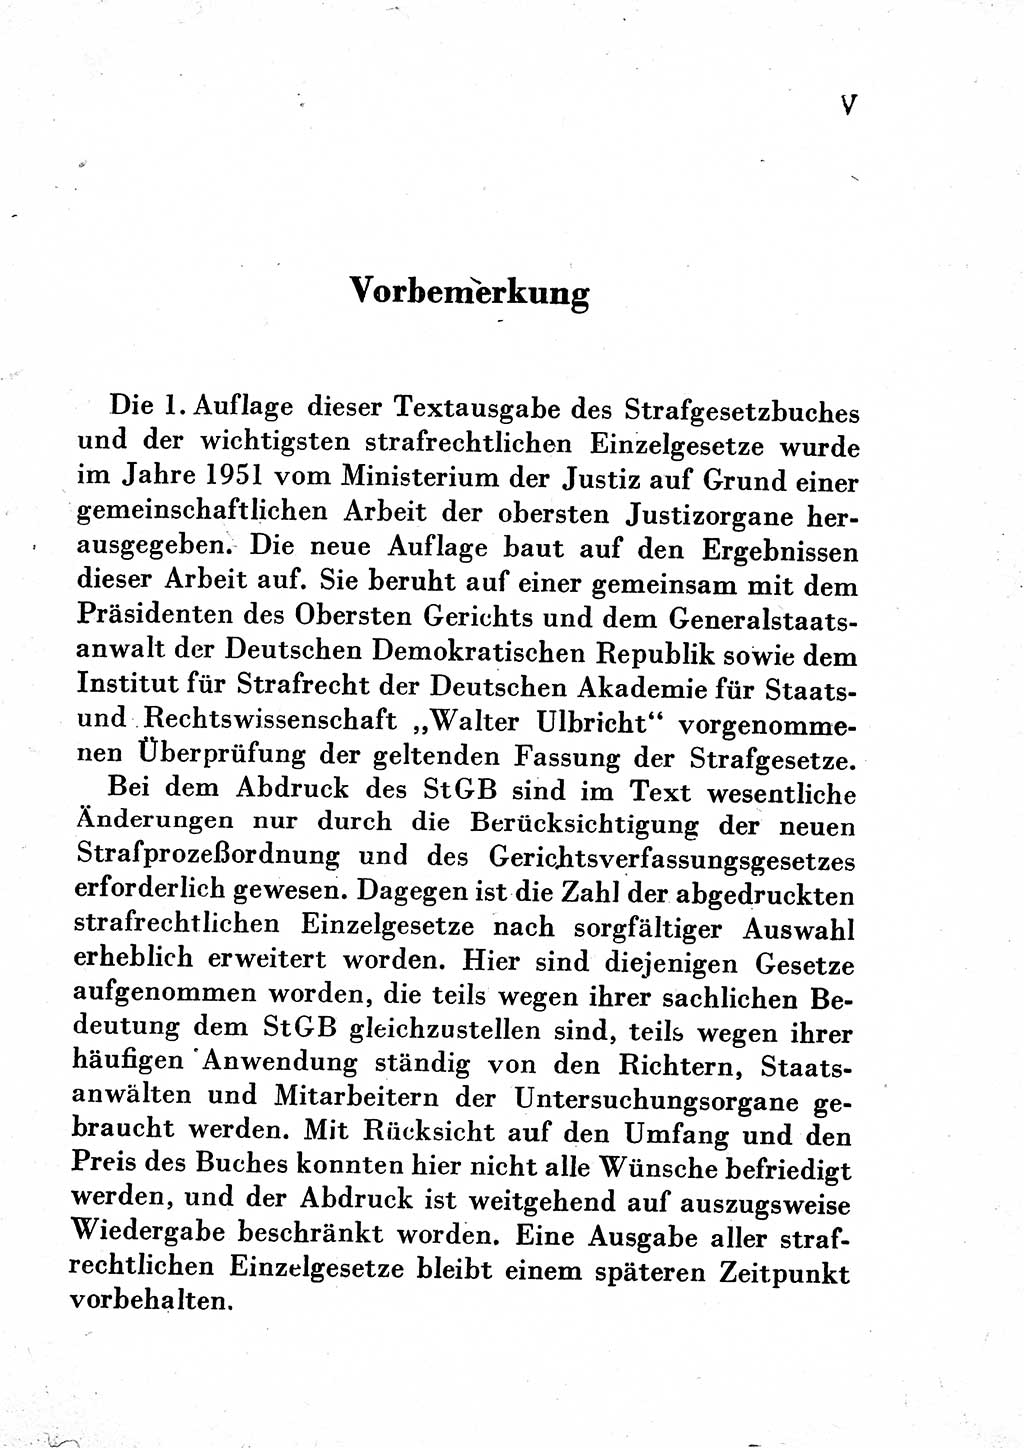 Einleitung Strafgesetzbuch (StGB) und andere Strafgesetze [Deutsche Demokratische Republik (DDR)] 1954, Seite 5 (Einl. StGB Strafges. DDR 1954, S. 5)